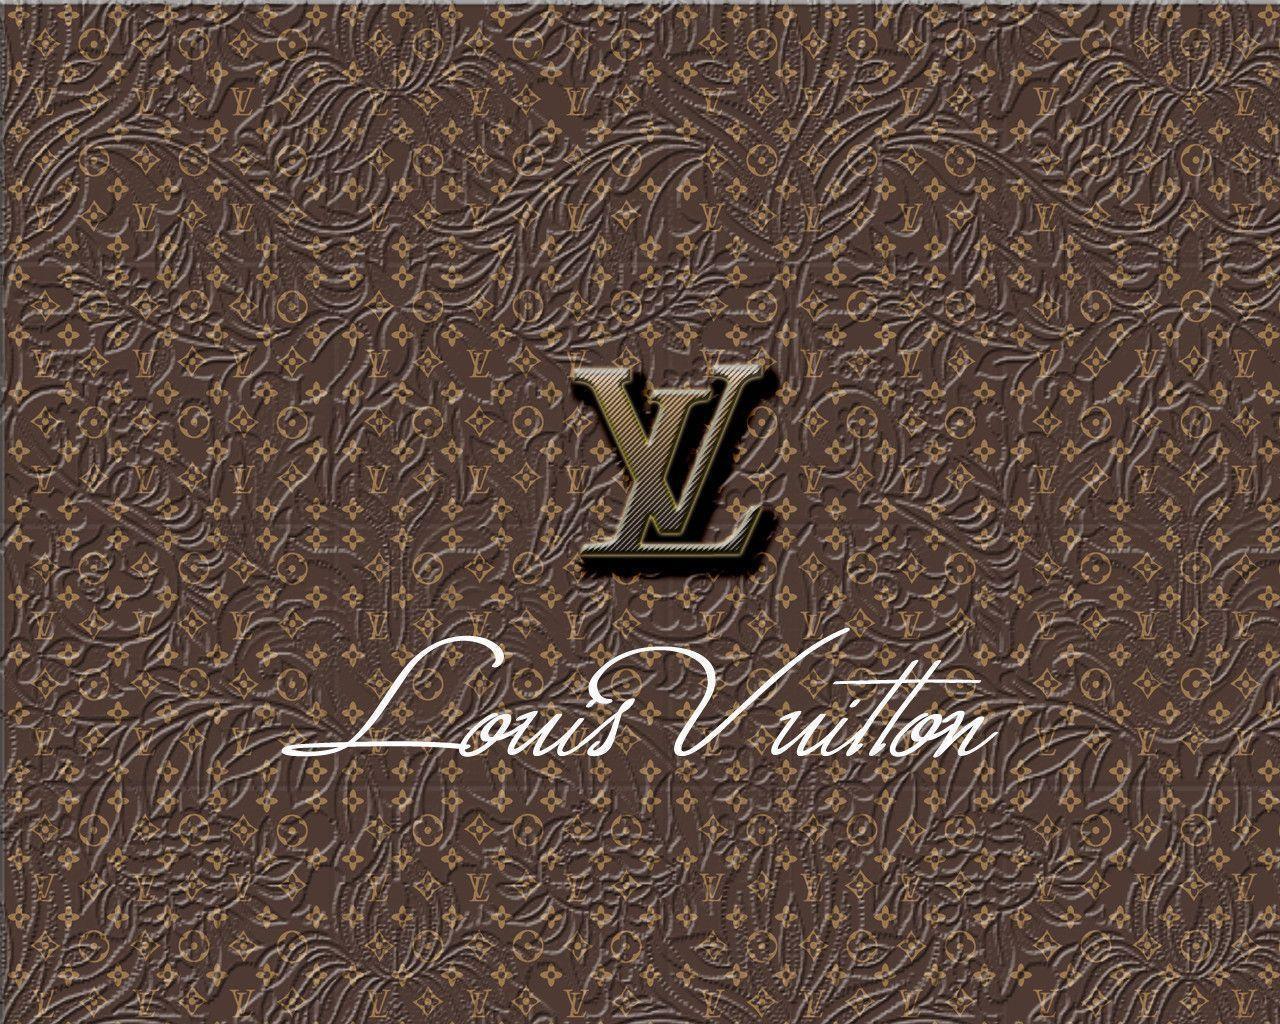 Wallpaper For > Louis Vuitton Wallpaper Gold